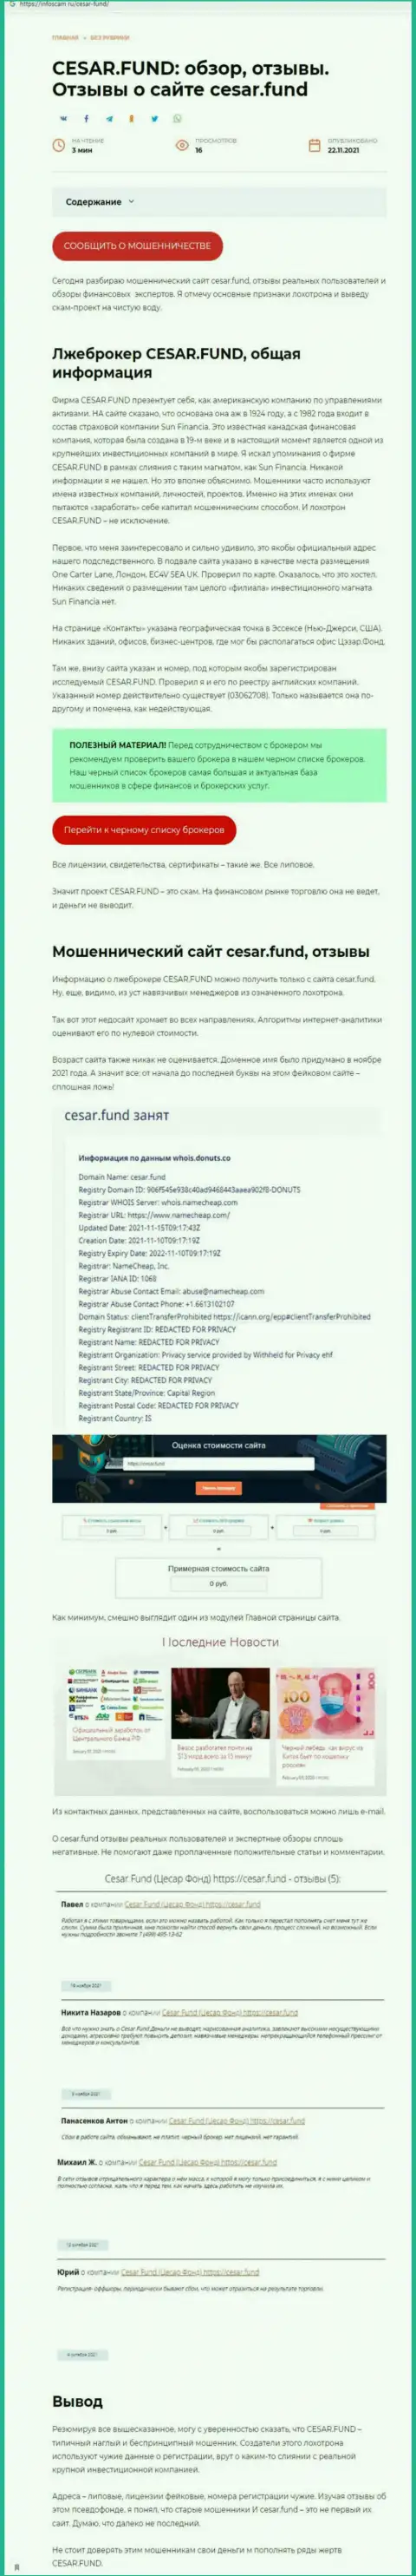 Выводящая на чистую воду, на просторах сети, информация о незаконных действиях Cesar Fund